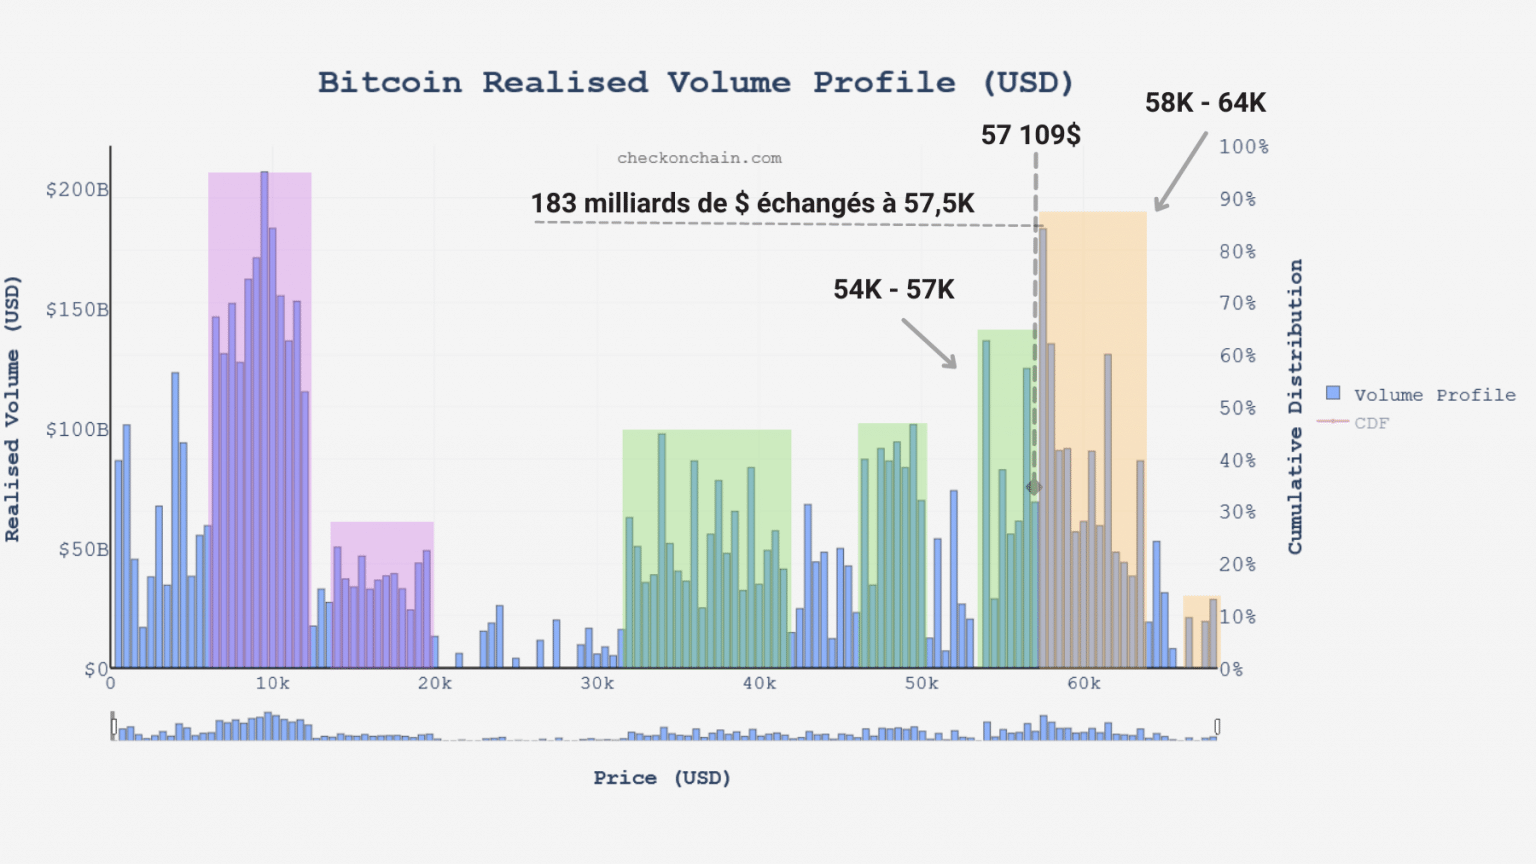 Graf realizovaného objemu bitcoinu (BTC) (Zdroj: checkonchain.com)